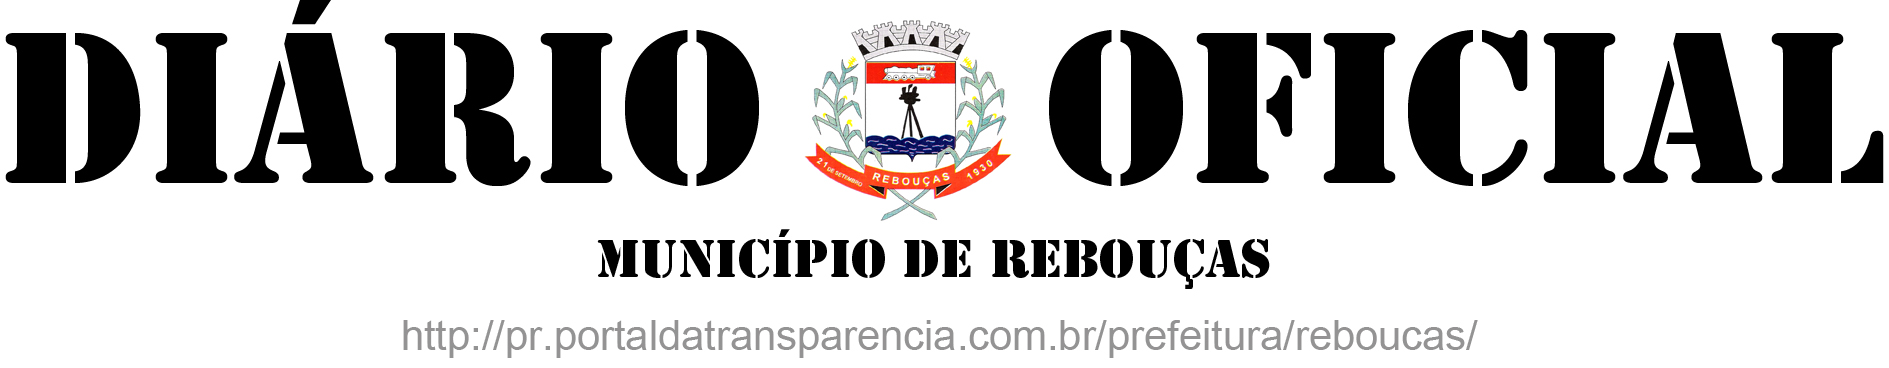 CNPJ 77.774.859/0001-82 - Rebouças Paraná DEPARTAMENTO DE RECURSOS HUMANOS Email: rh@reboucas.pr.gov.br rhpmreboucas@yahoo.com.br PORTARIA N.